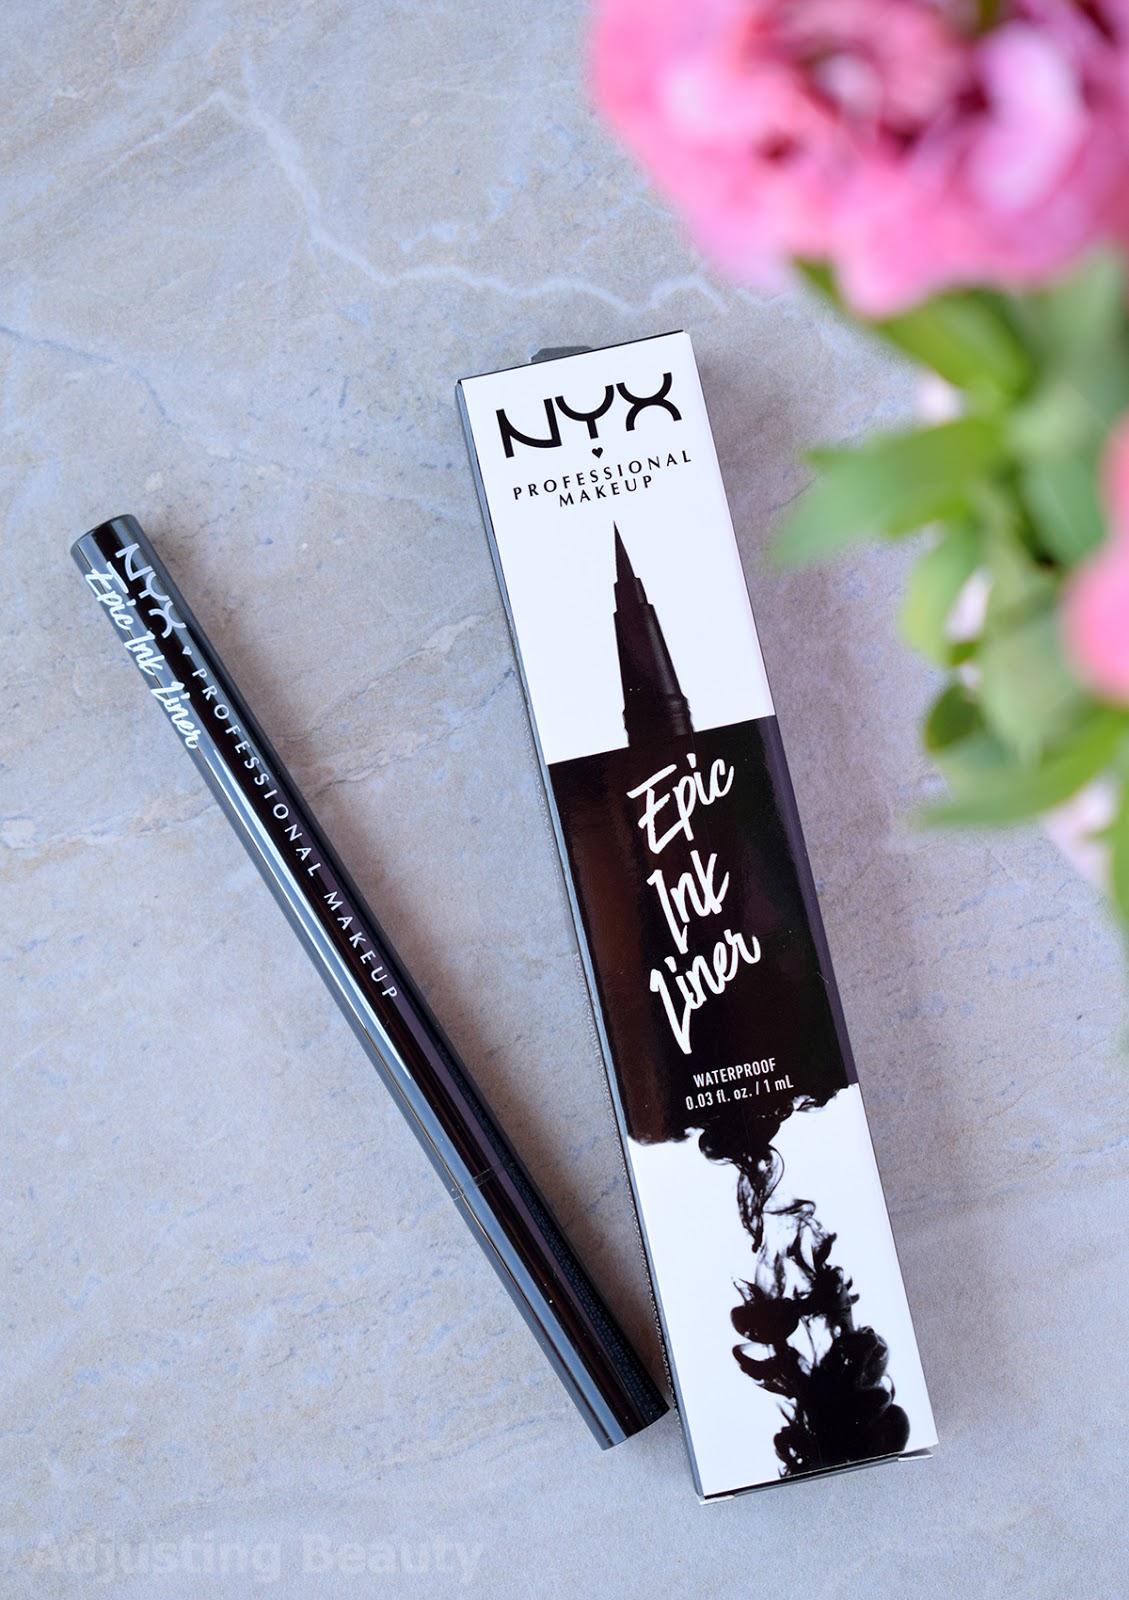 entusiasme deadlock Afvige Review: NYX Epic Ink Liner - Black - Adjusting Beauty